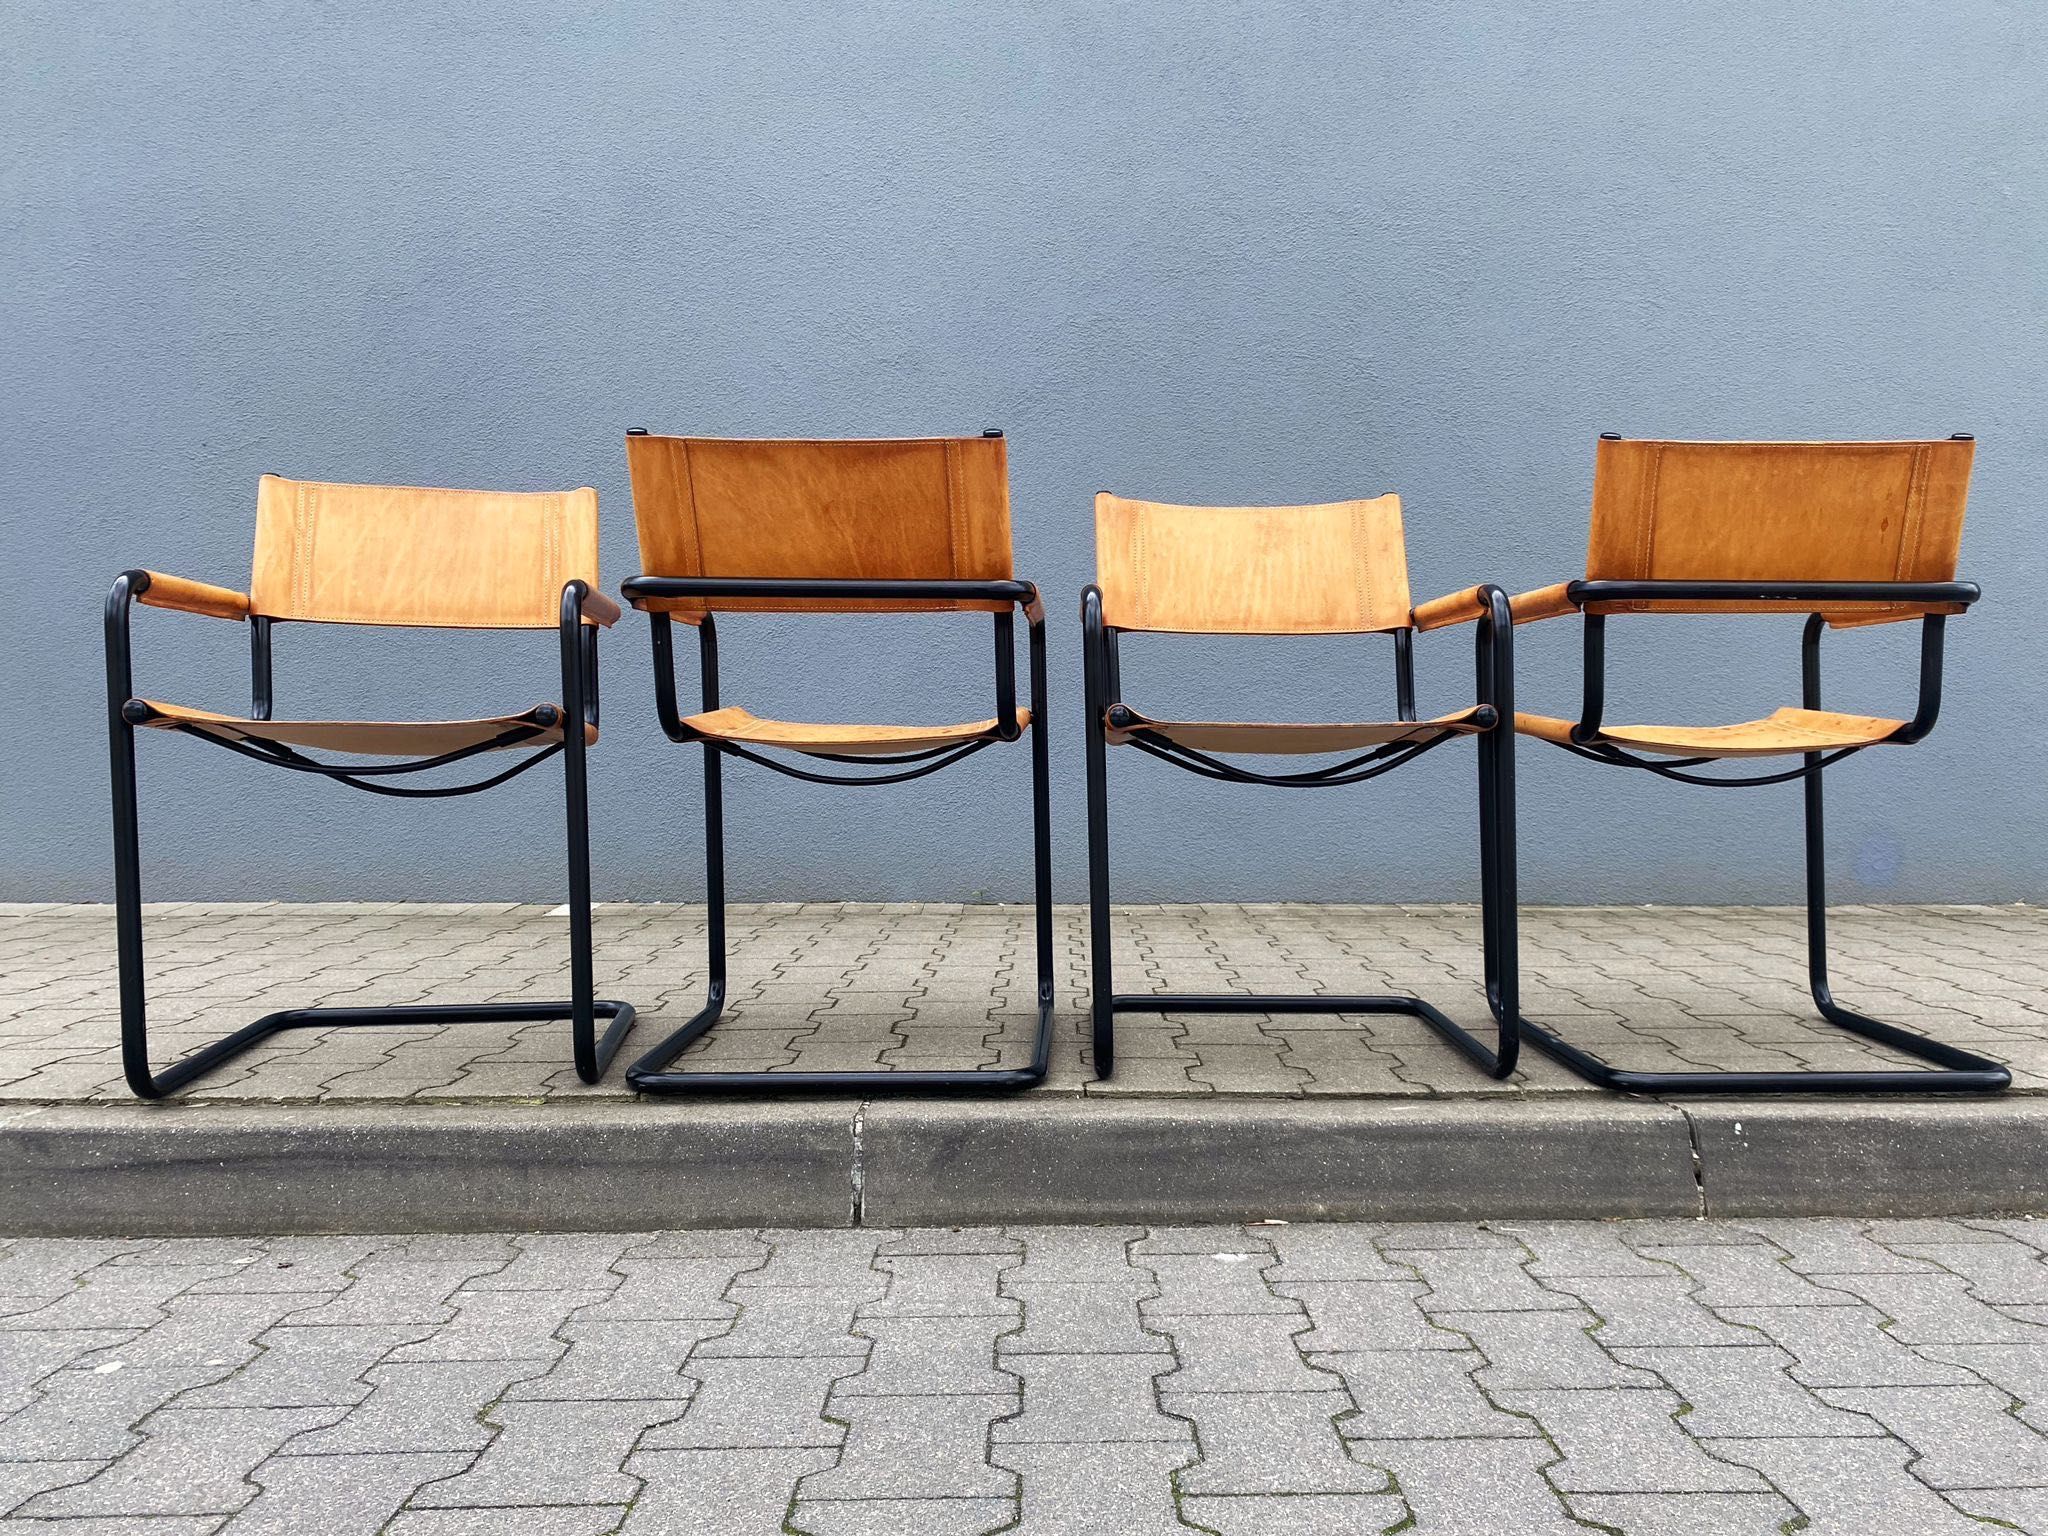 Unikatowe retro krzesła z lat 70. od Linea Veam, projekt Marta Stama.